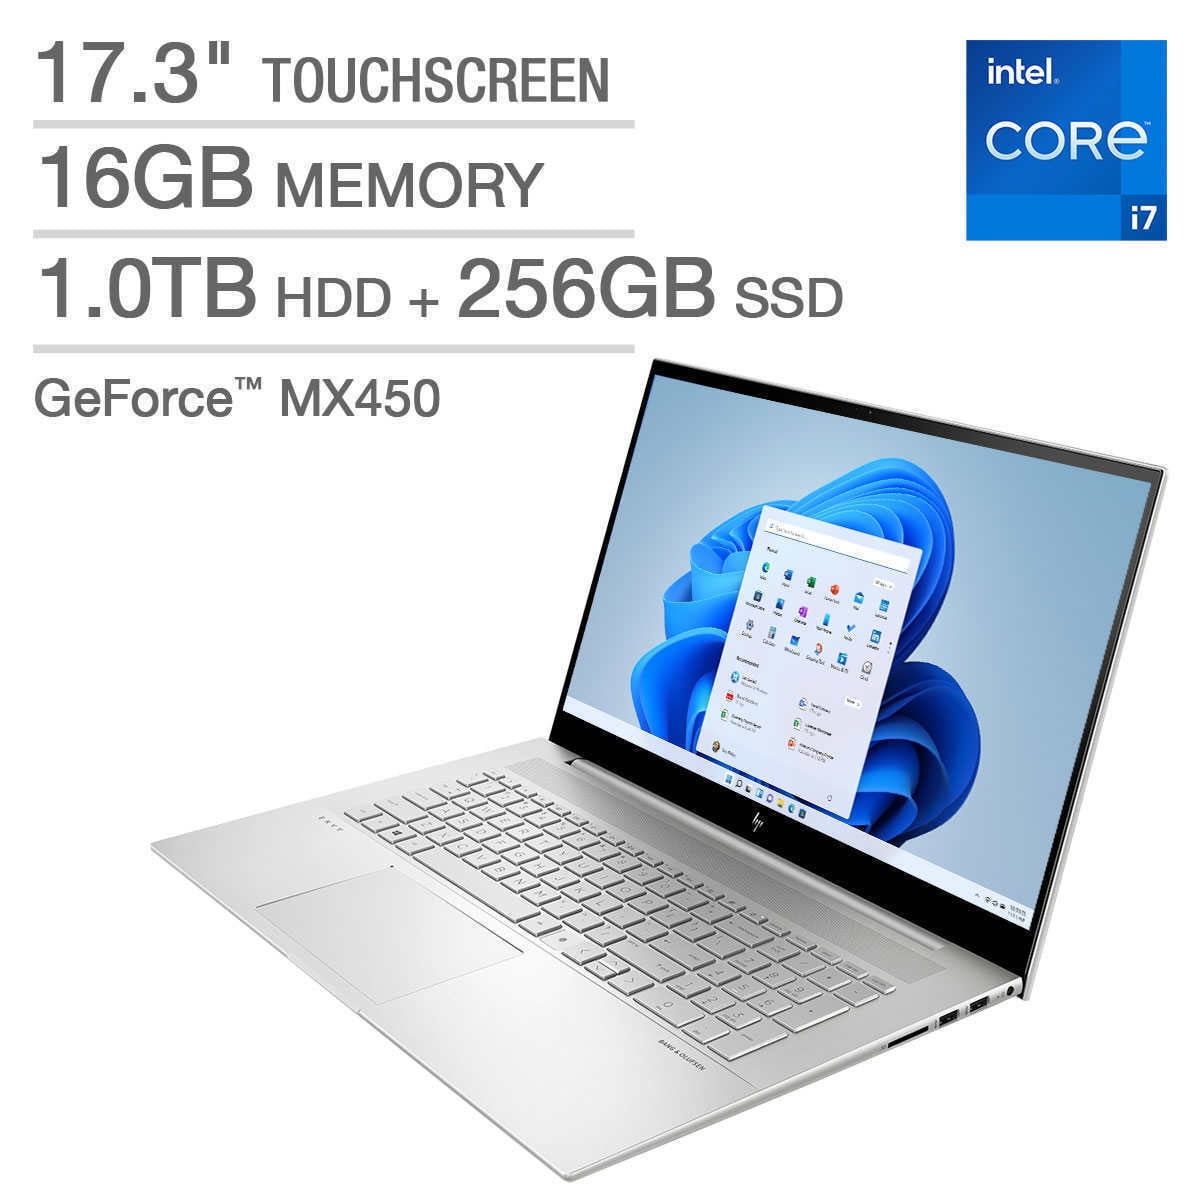 HP ENVY 16 Touchscreen Laptop - 13th Gen Intel Core i7-13700H